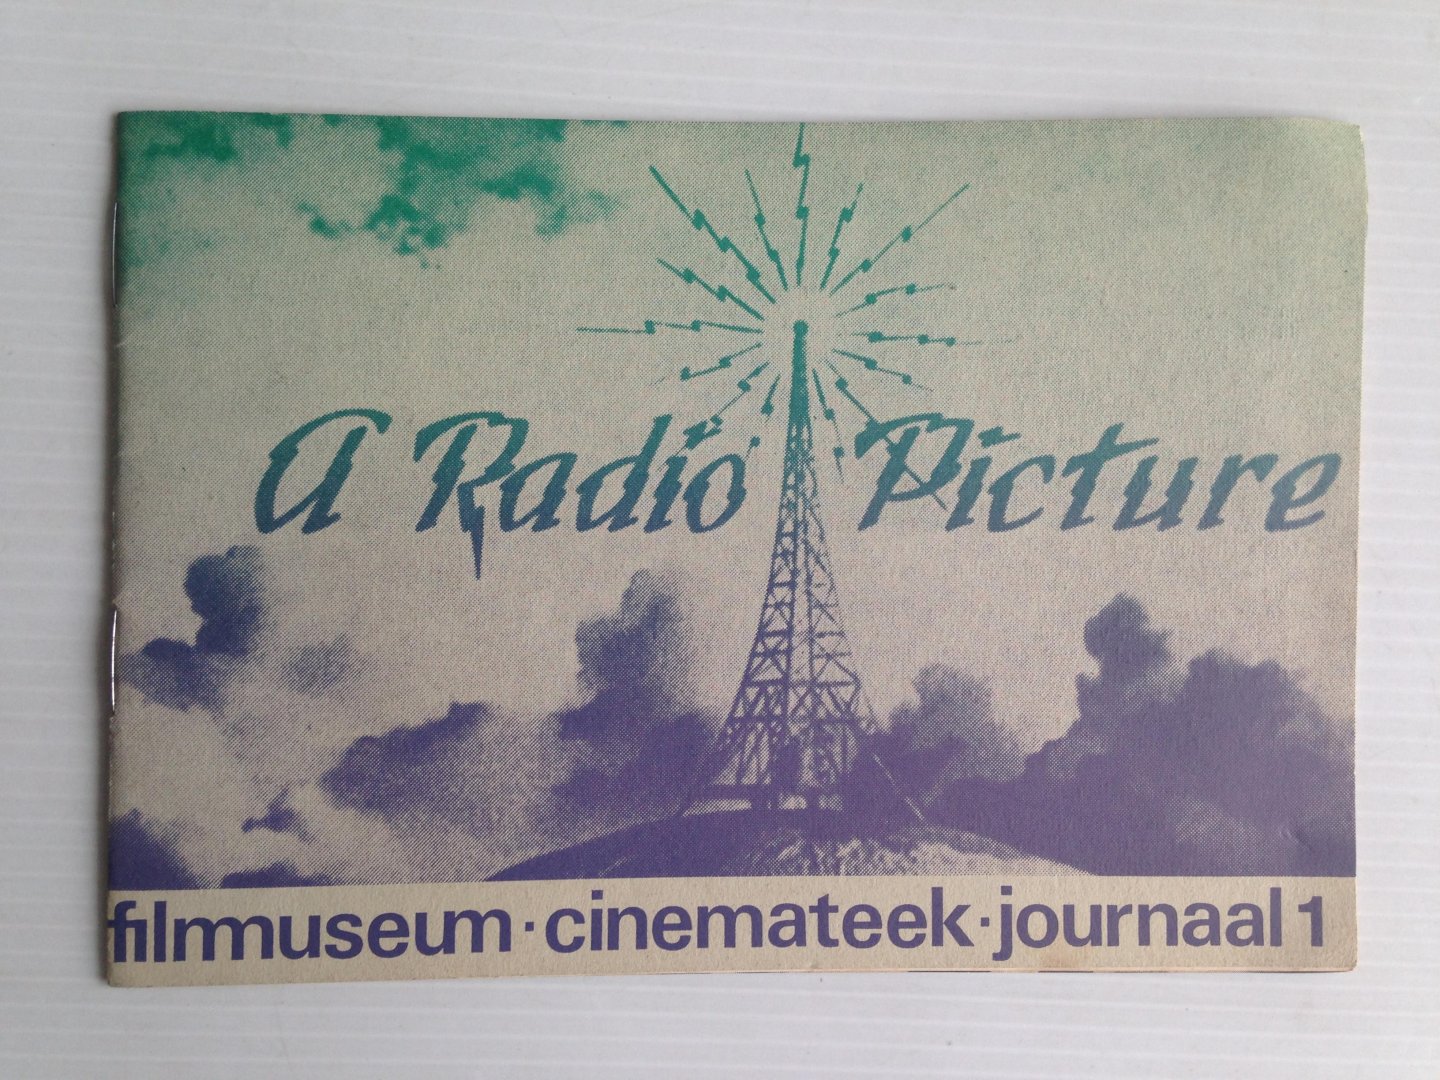  - RKO in de dertiger jaren - de amusementsfilm, Filmmuseum Cinemateek, Journaal 1